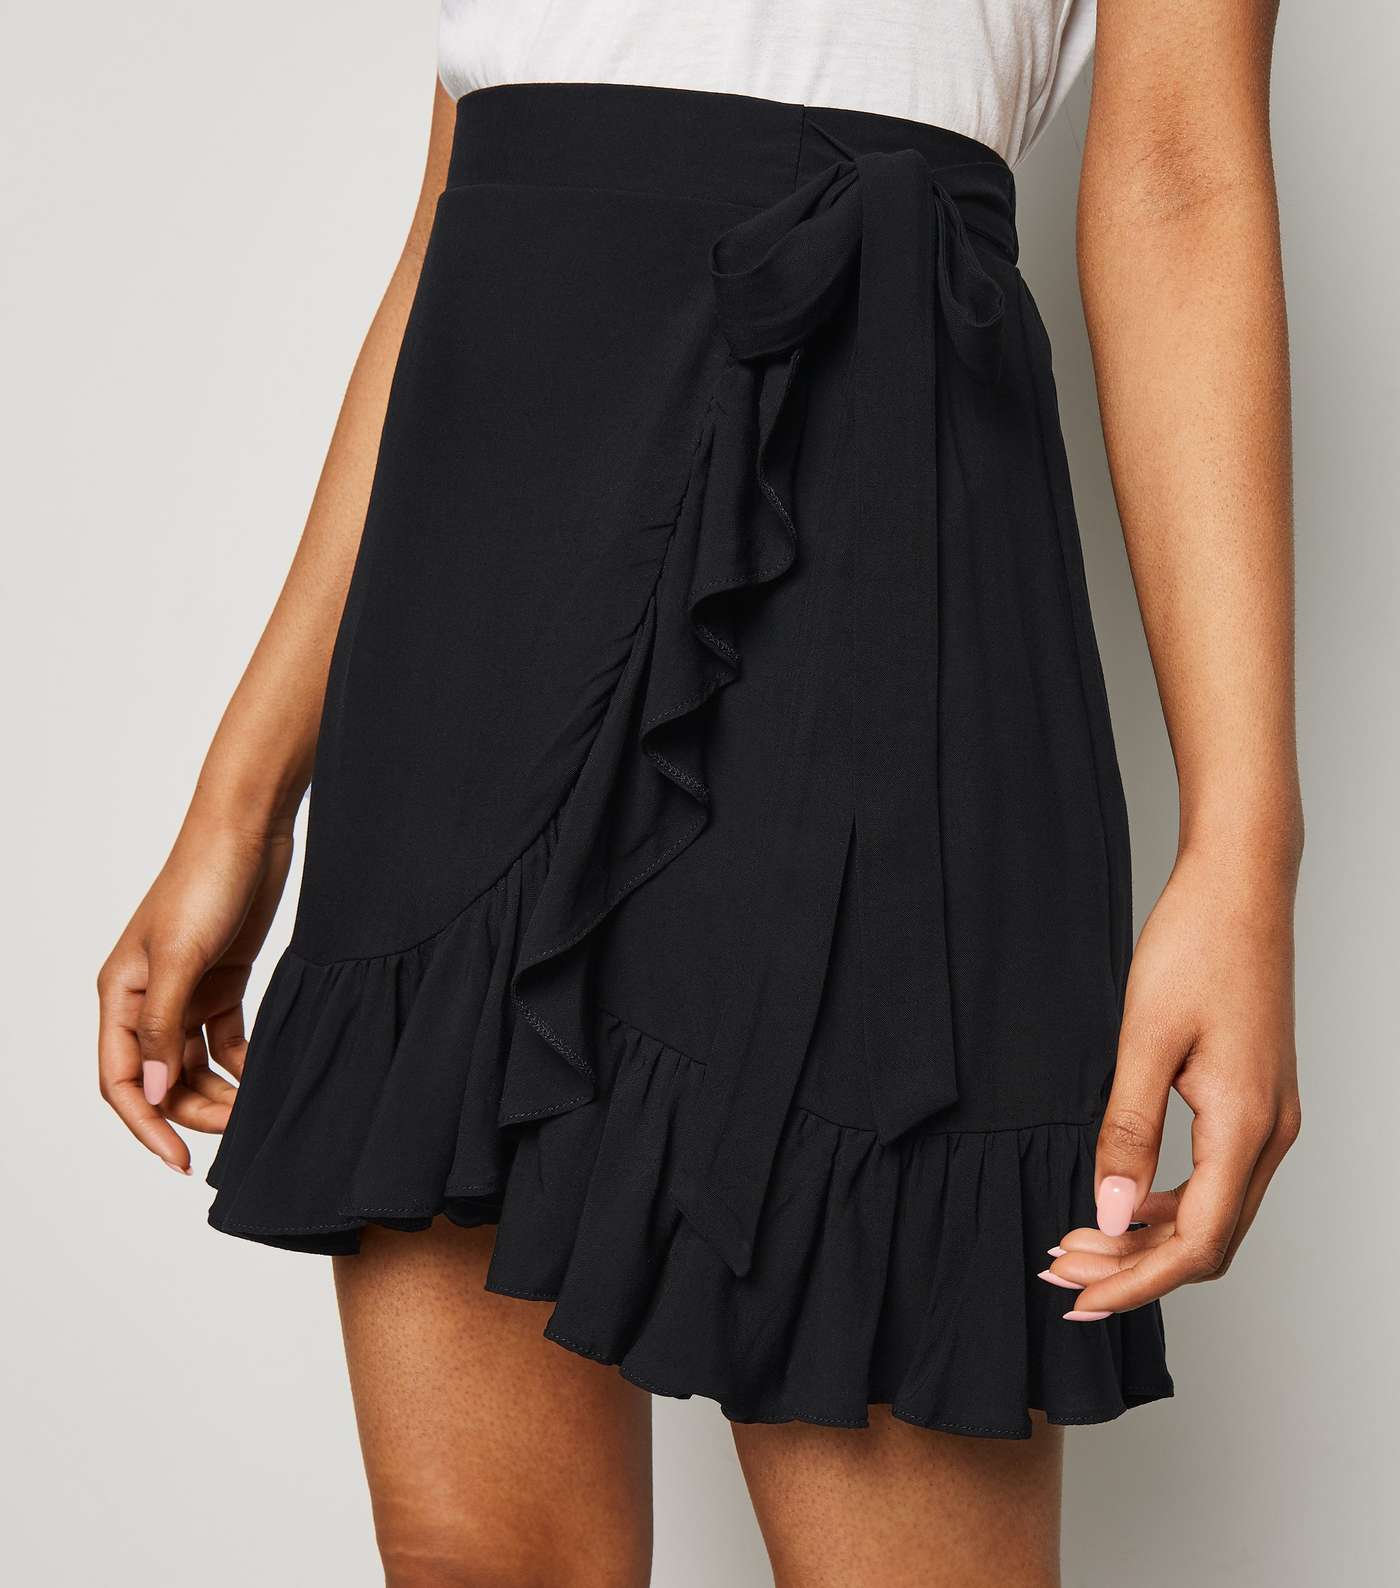 Petite Black Ruffle Mini Skirt Image 5